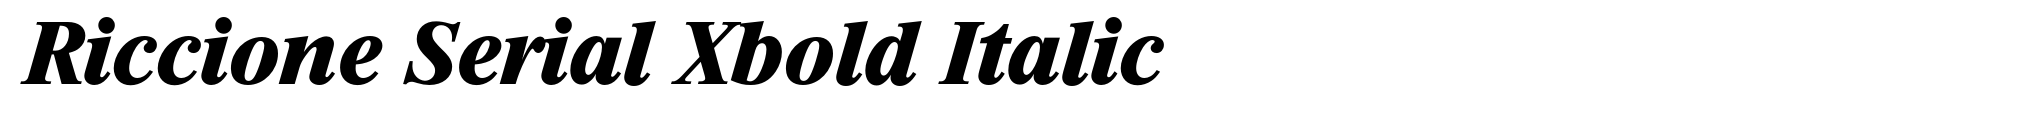 Riccione Serial Xbold Italic image